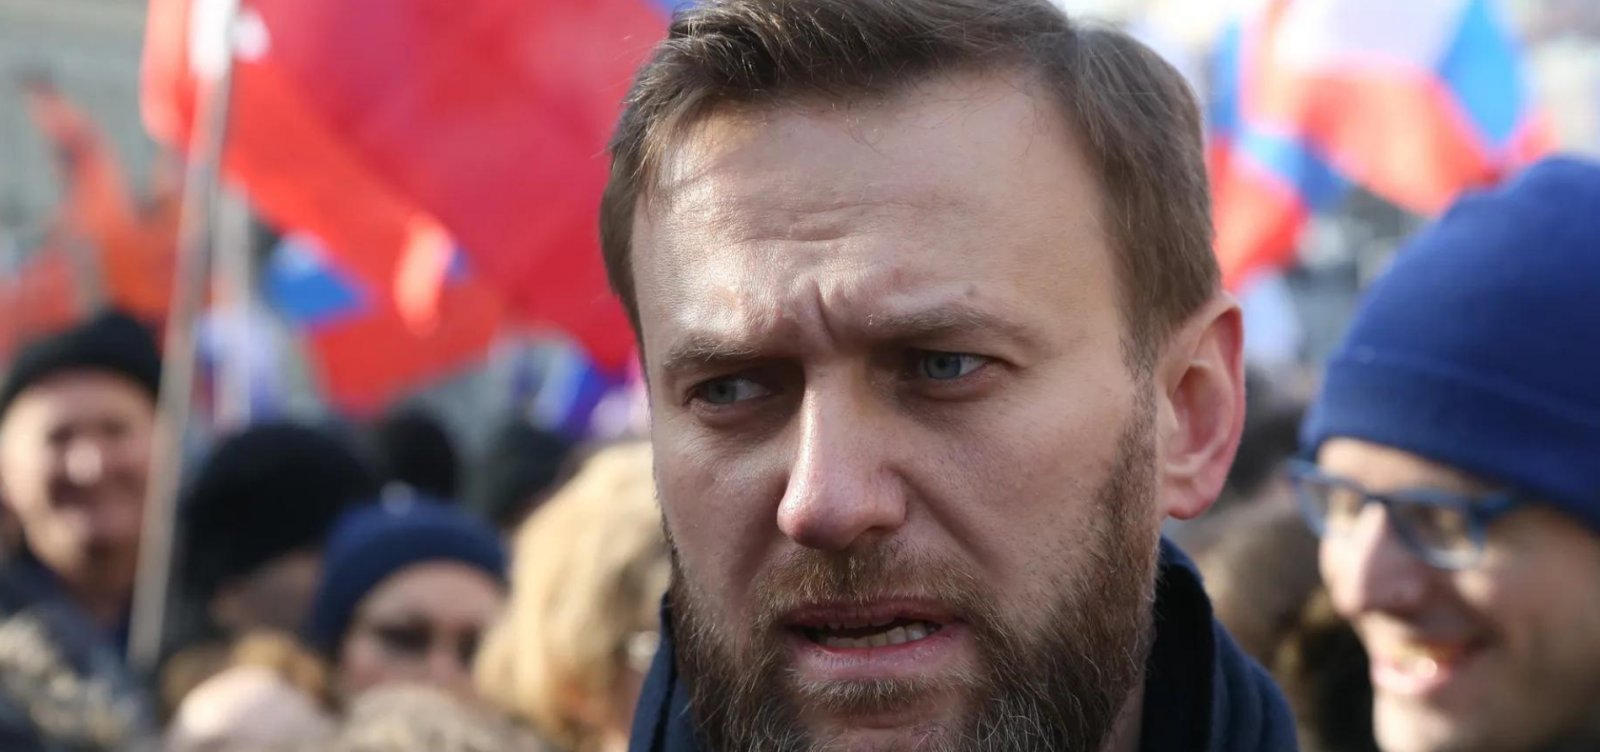 Viúva de Navalny acusa Putin e diz que assumirá luta do marido "por uma Rússia livre”